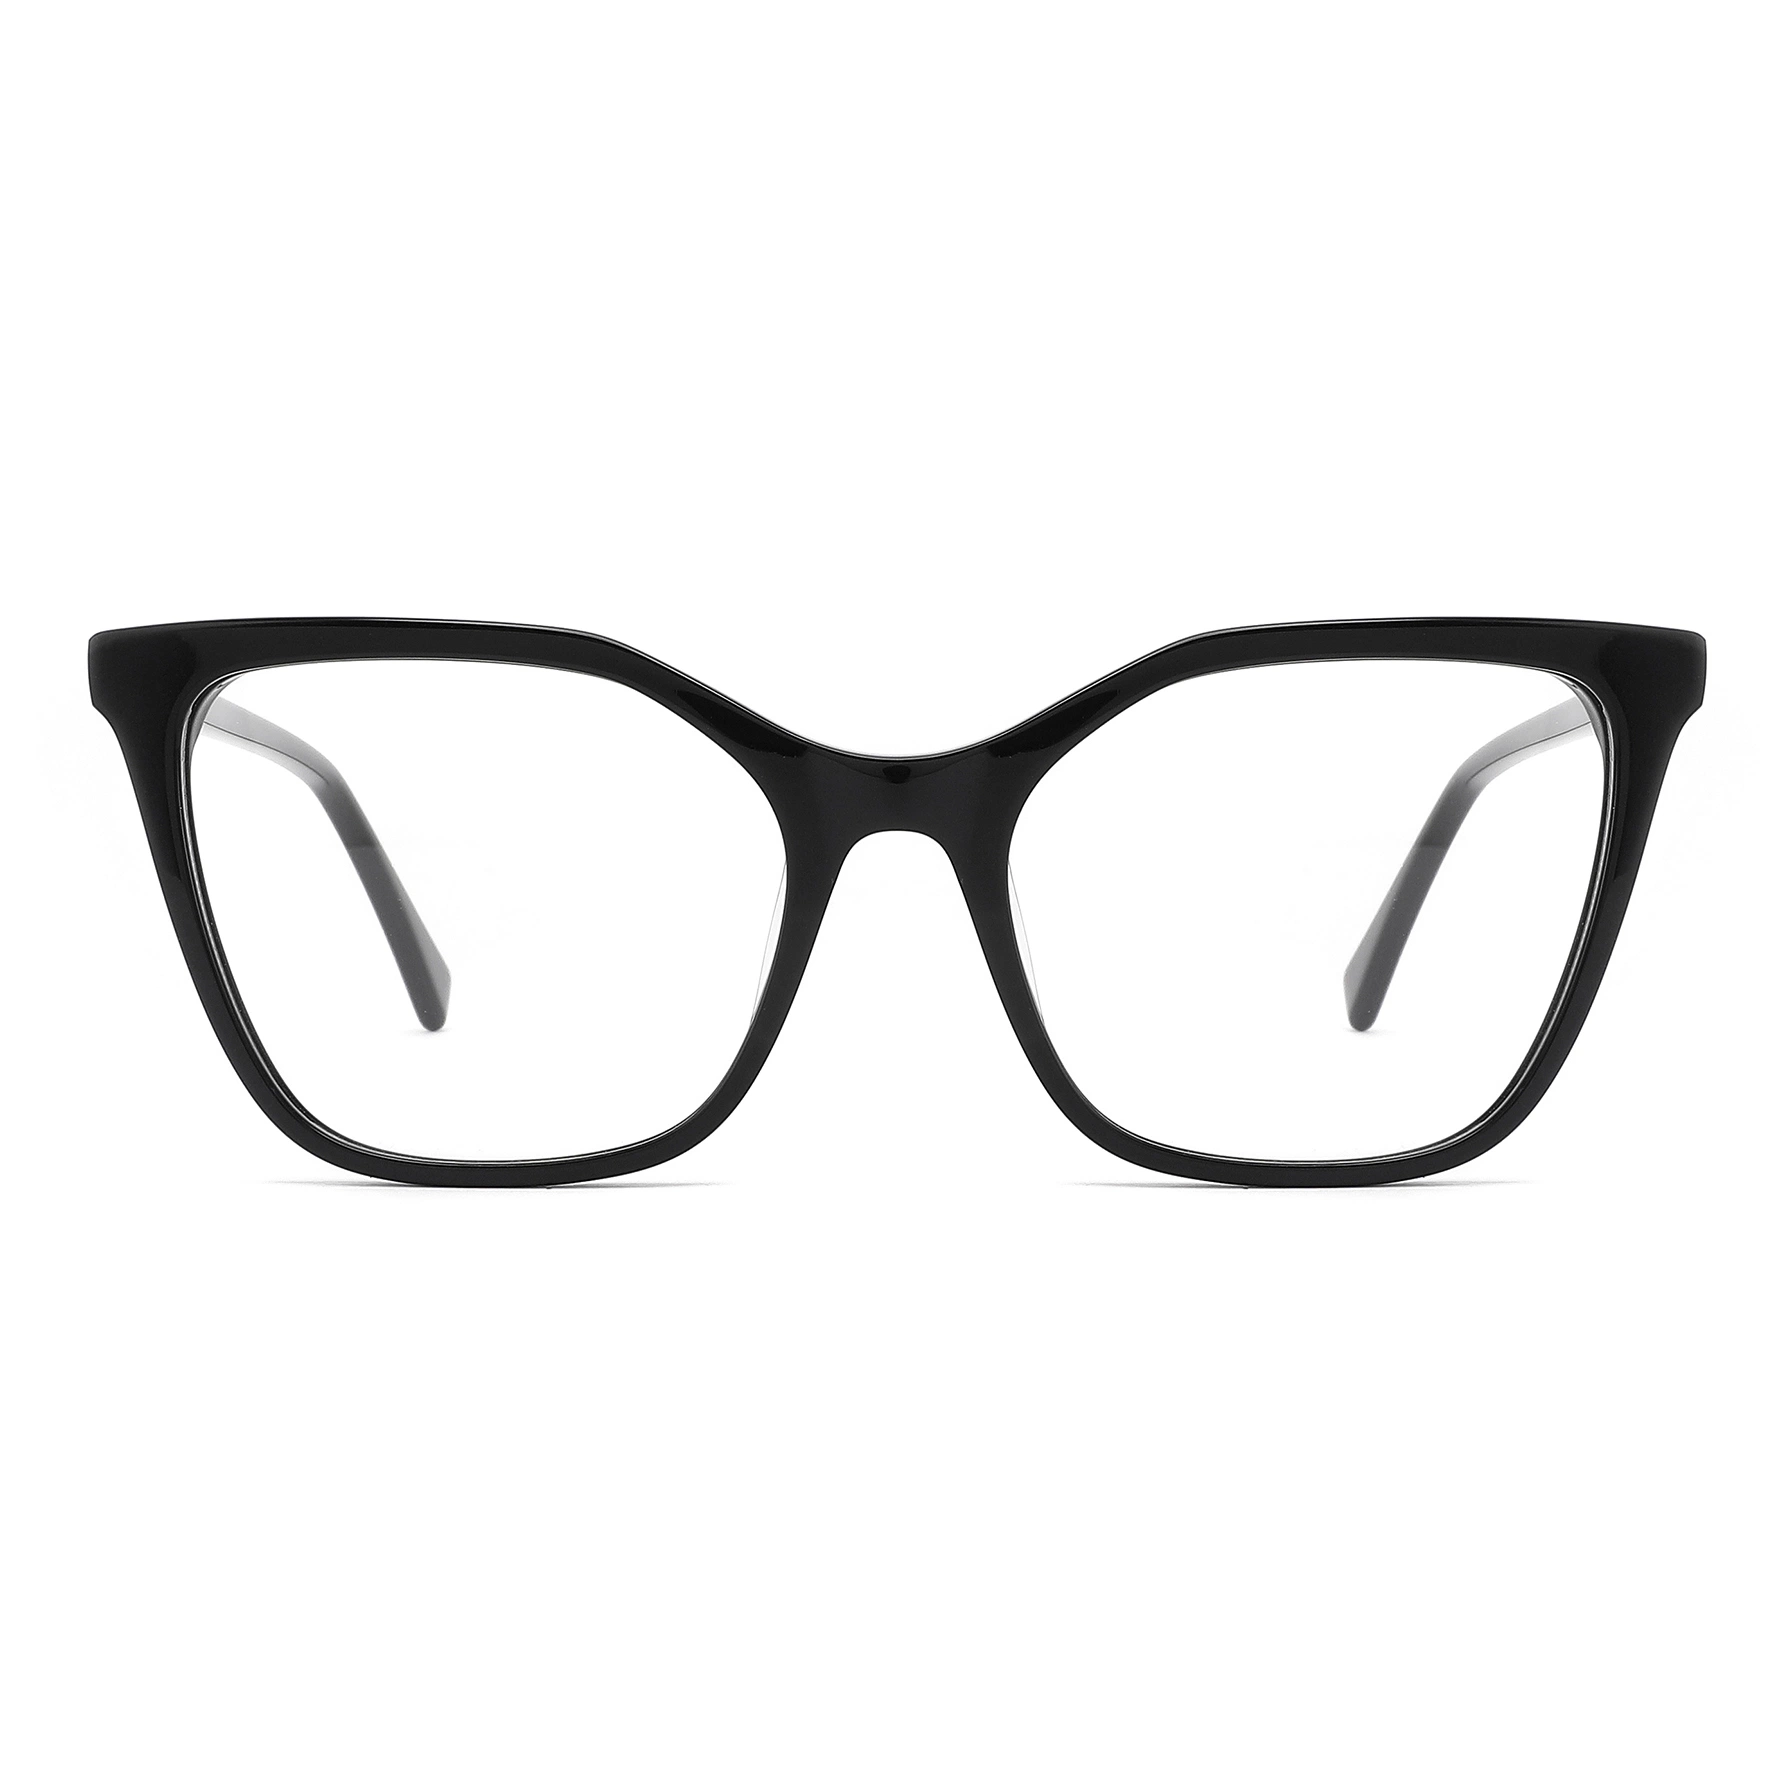 Modelo mais recente padrão de tartaruga Acatate Moda clássica Retro eyeglasses Women Primeiras molduras ópticas de acetato metálico